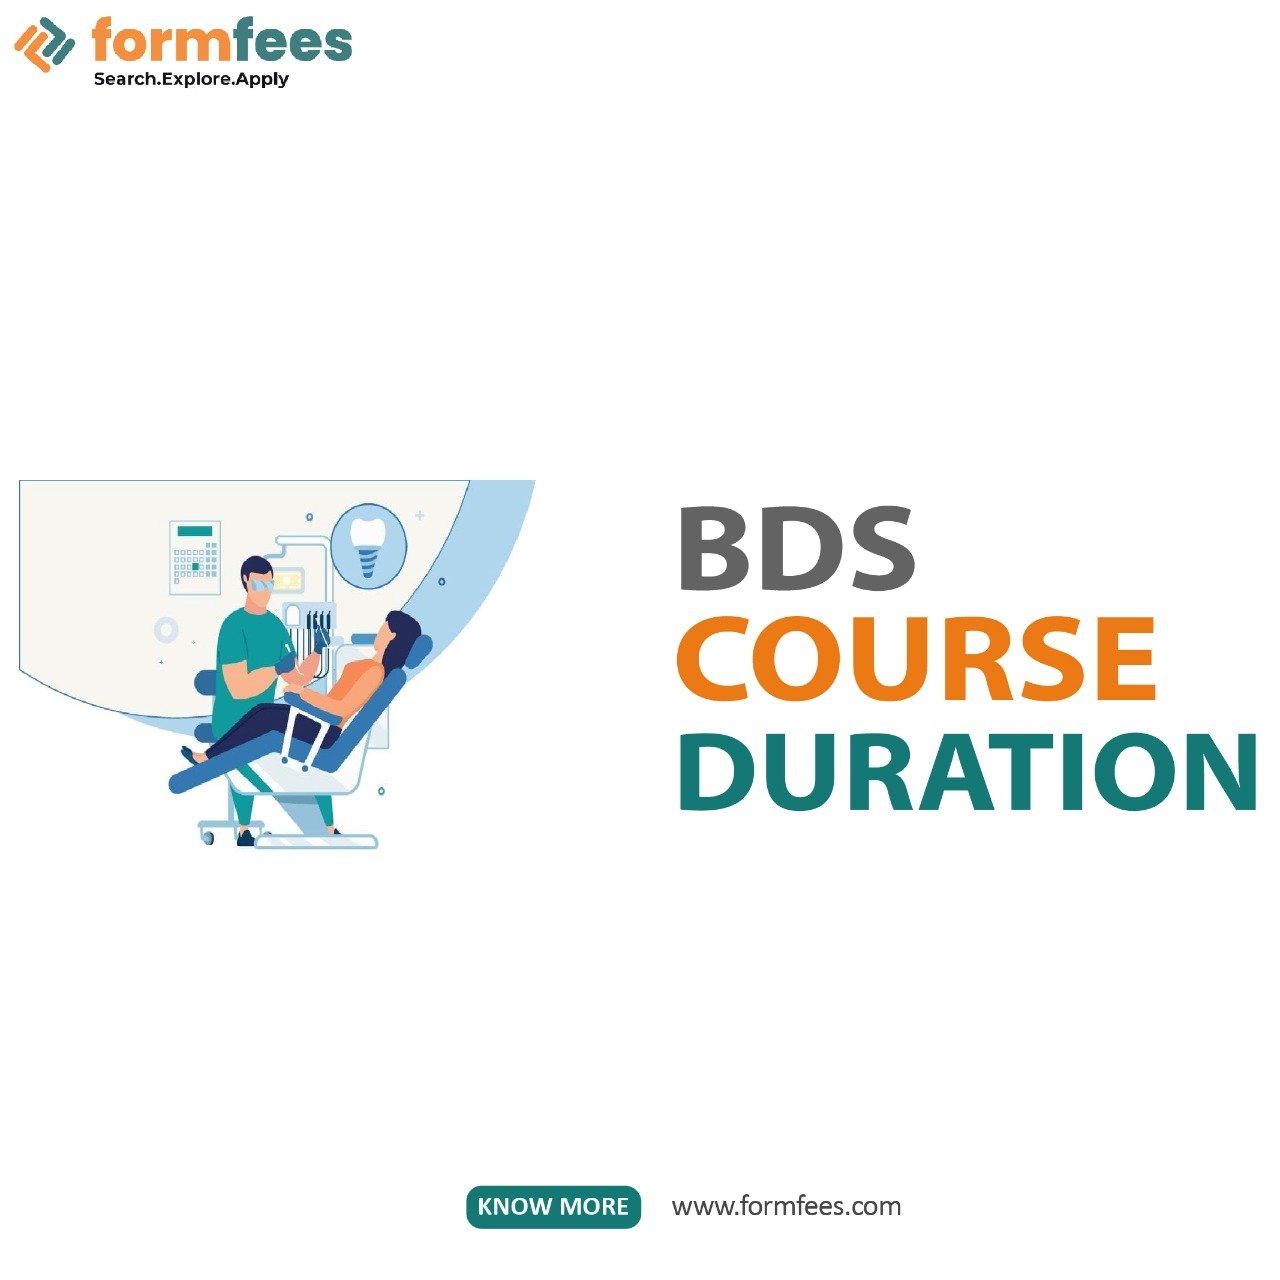 BDS Courses Duration